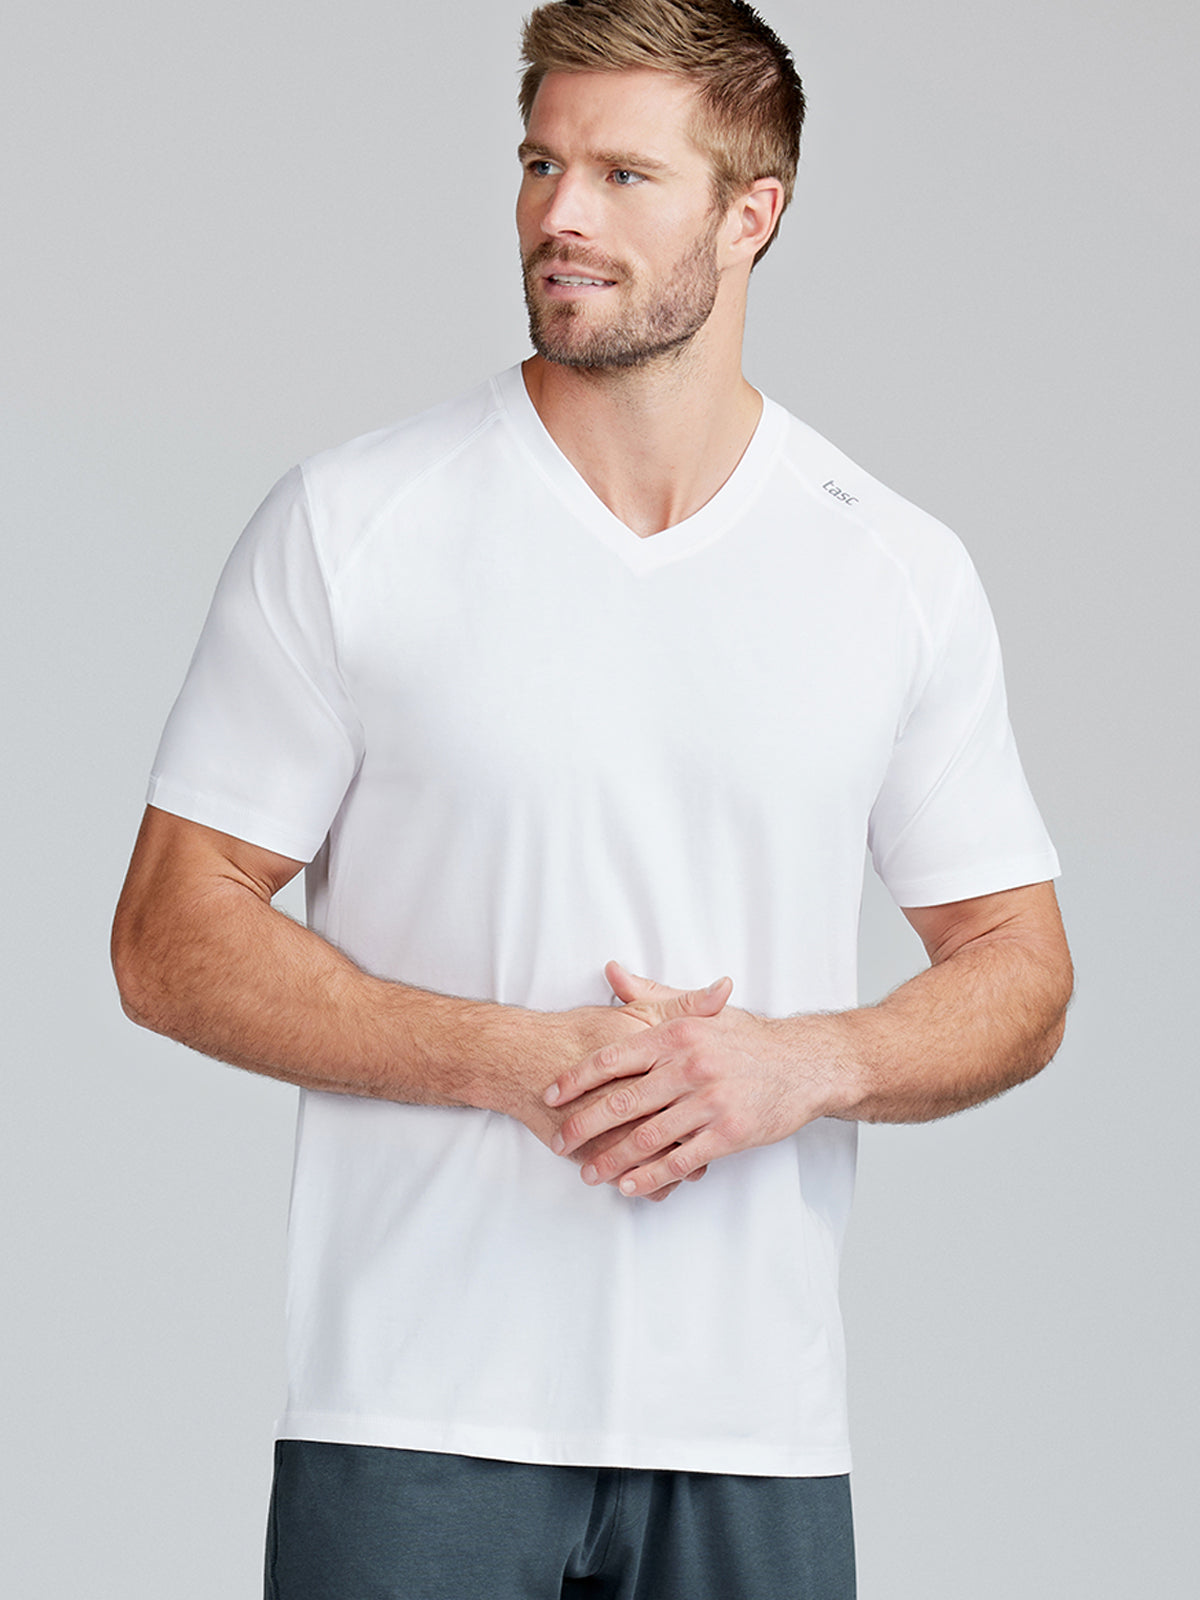 Carrollton Fitness V-Neck T-Shirt, Men's Apparel